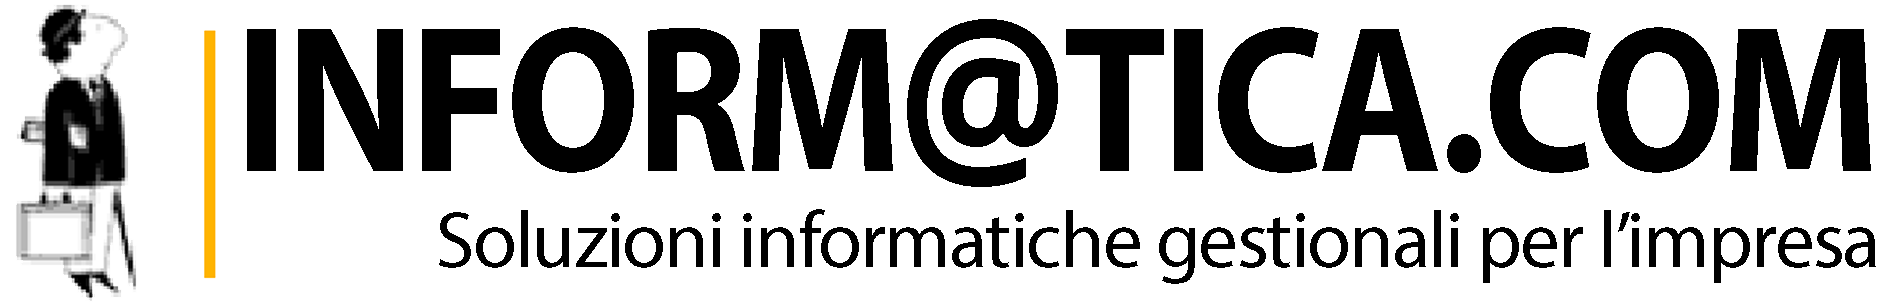 logo informaticacom